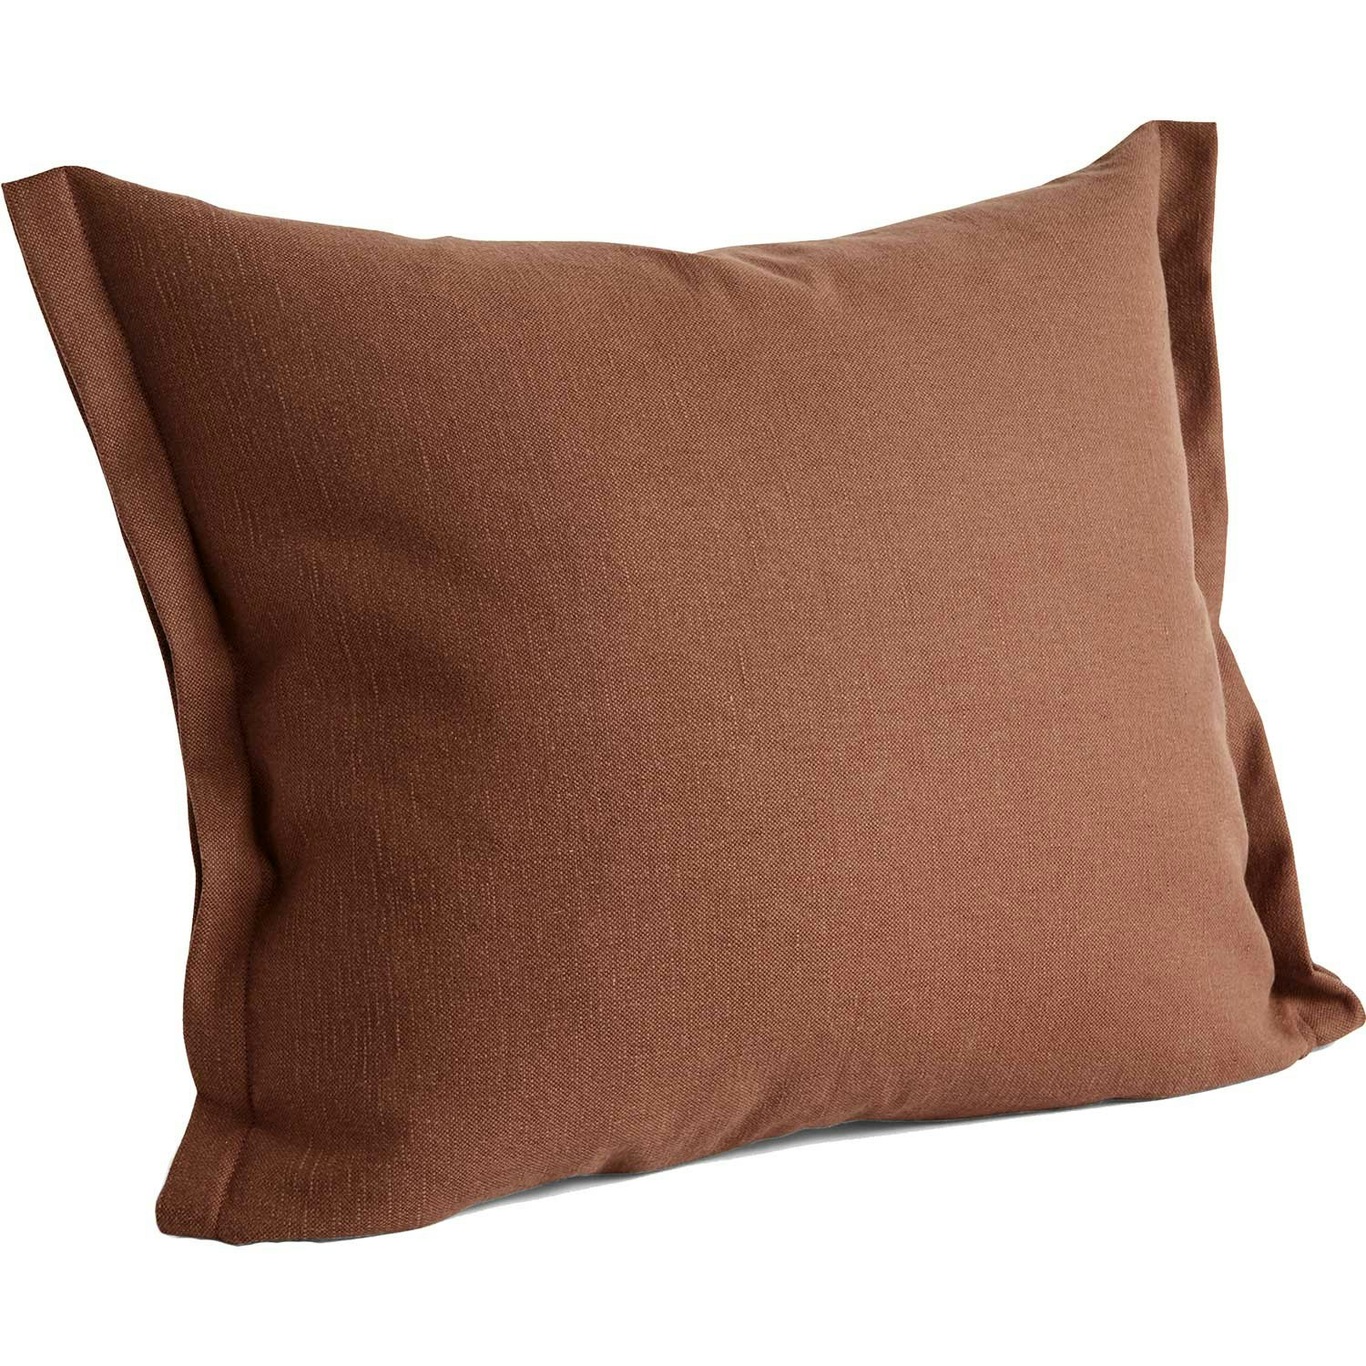 Plica Planar Cushion 55x60 cm, Chocolate